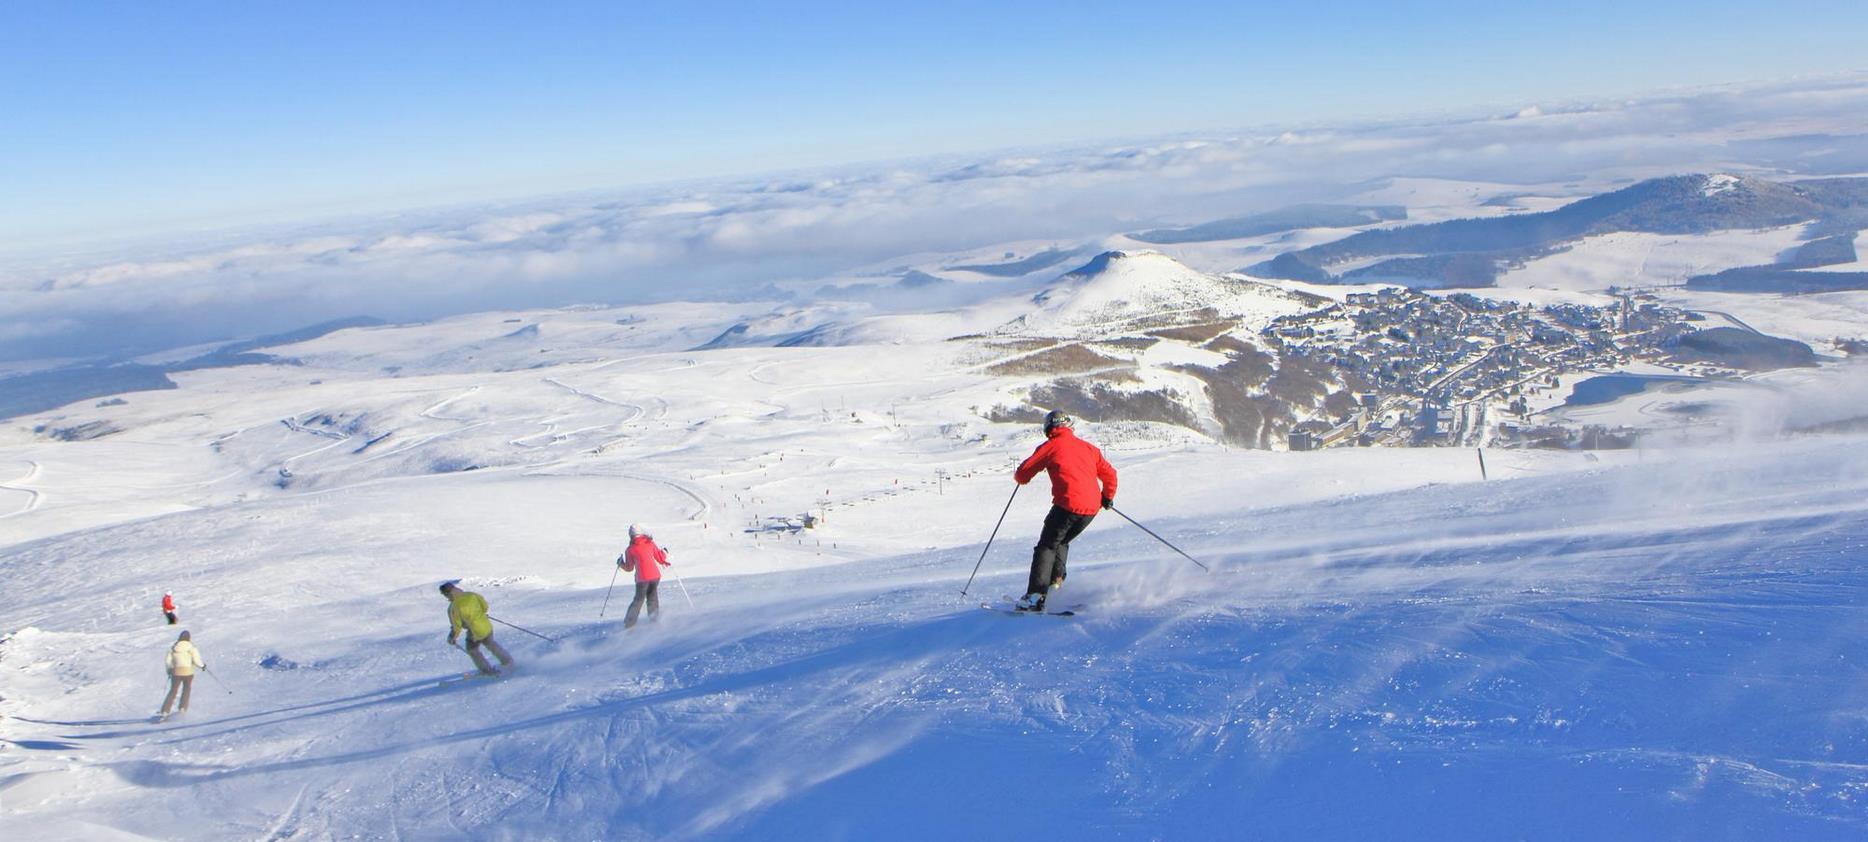 Super Besse - ski alpin et vue sur la station de ski de Super Besse